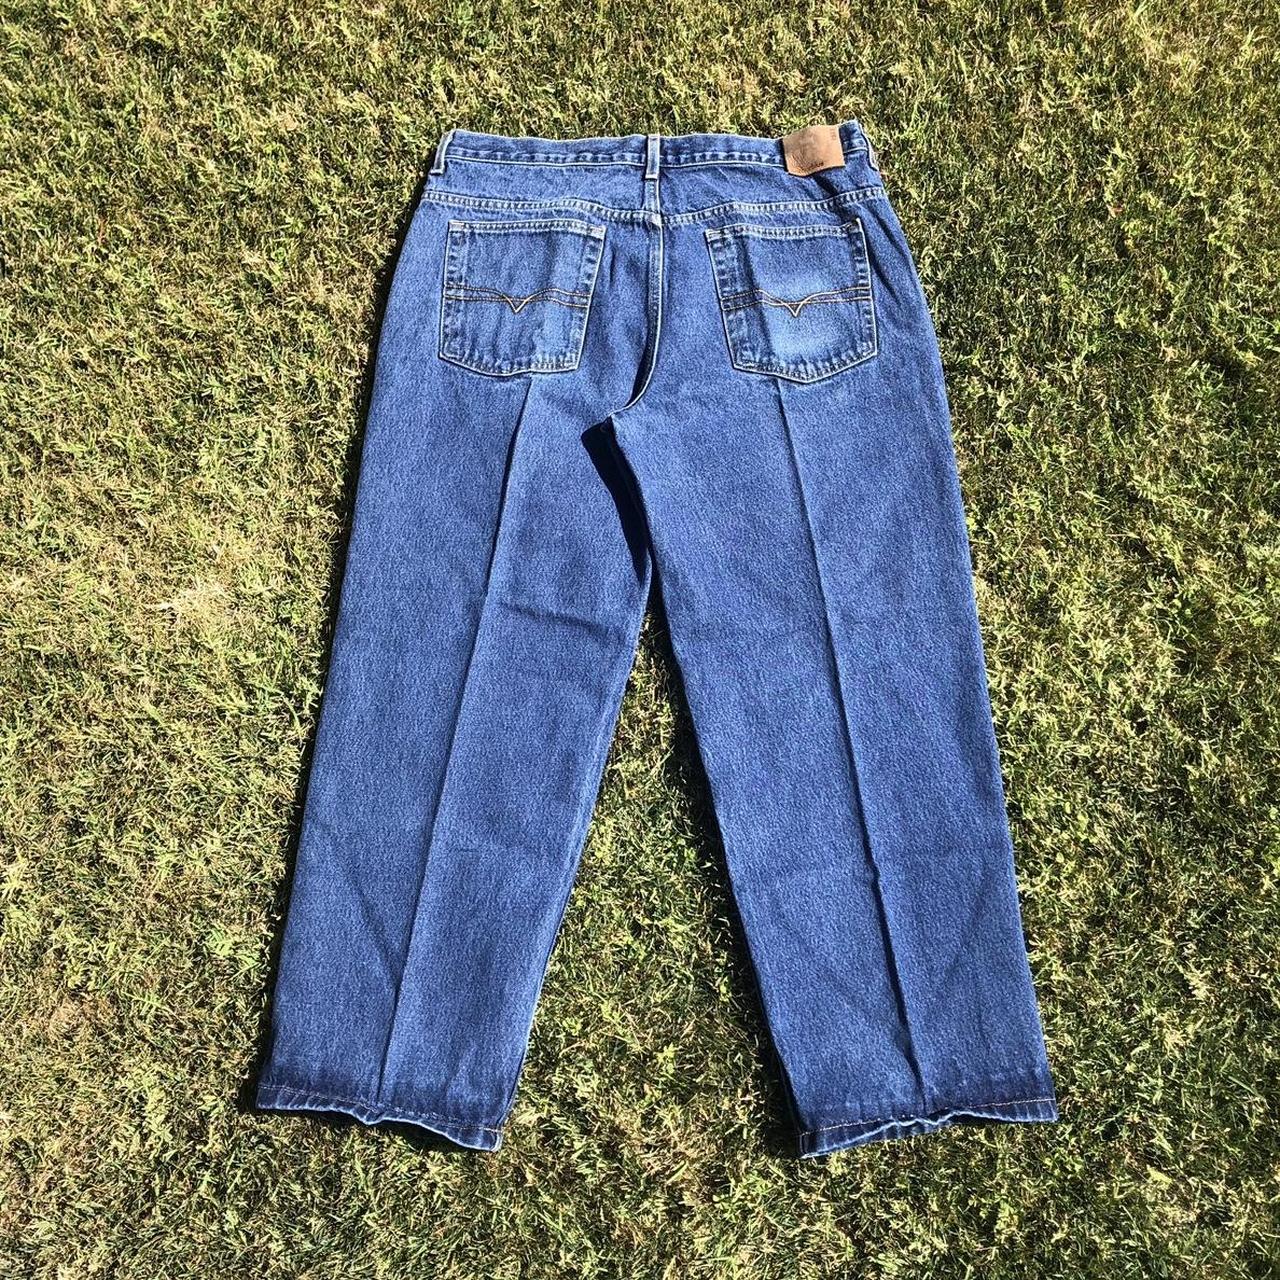 y2k baggy anchor blue jeans original fit 38x30 9”... - Depop